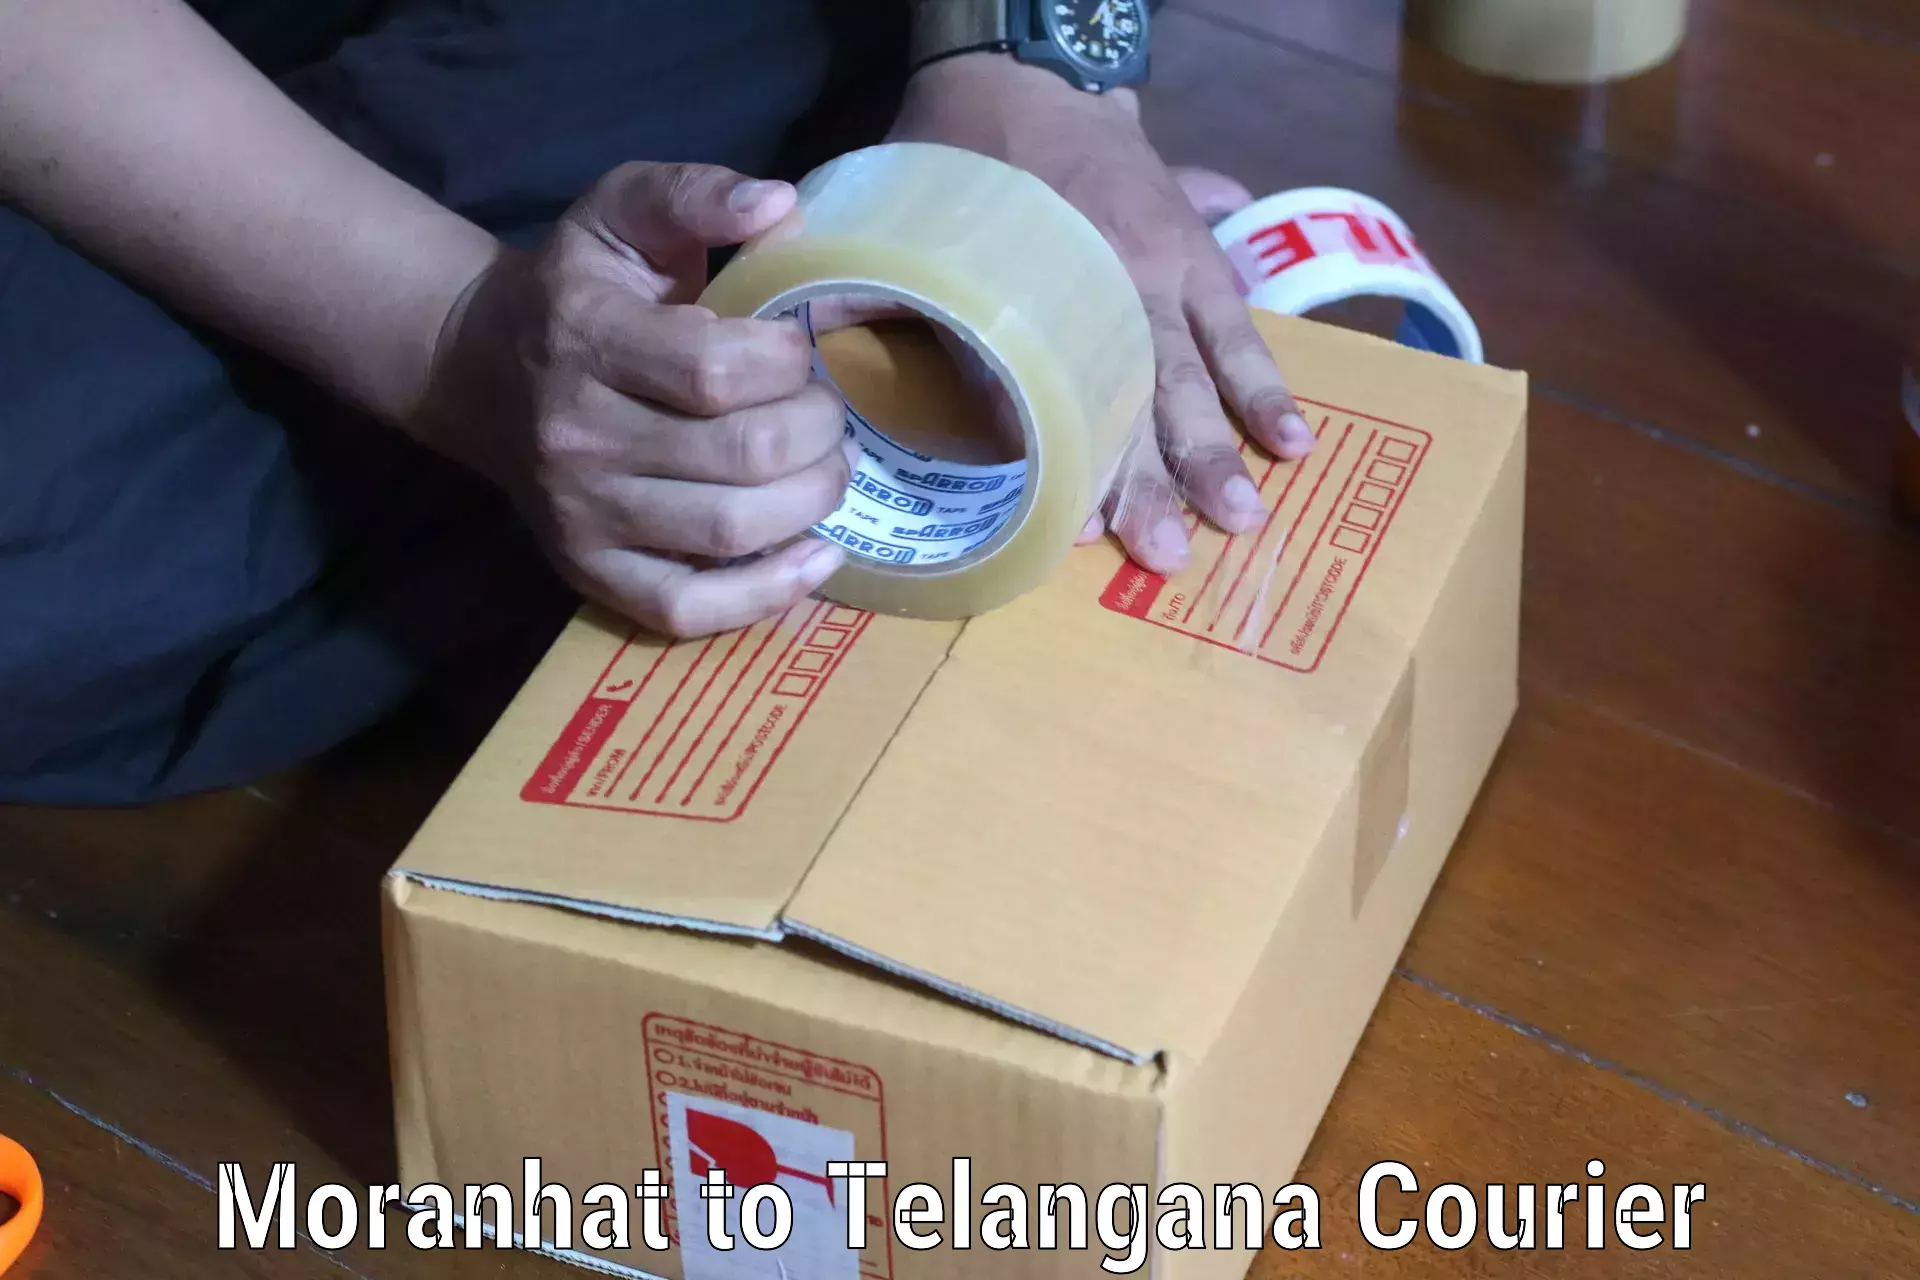 Courier service partnerships Moranhat to Marikal